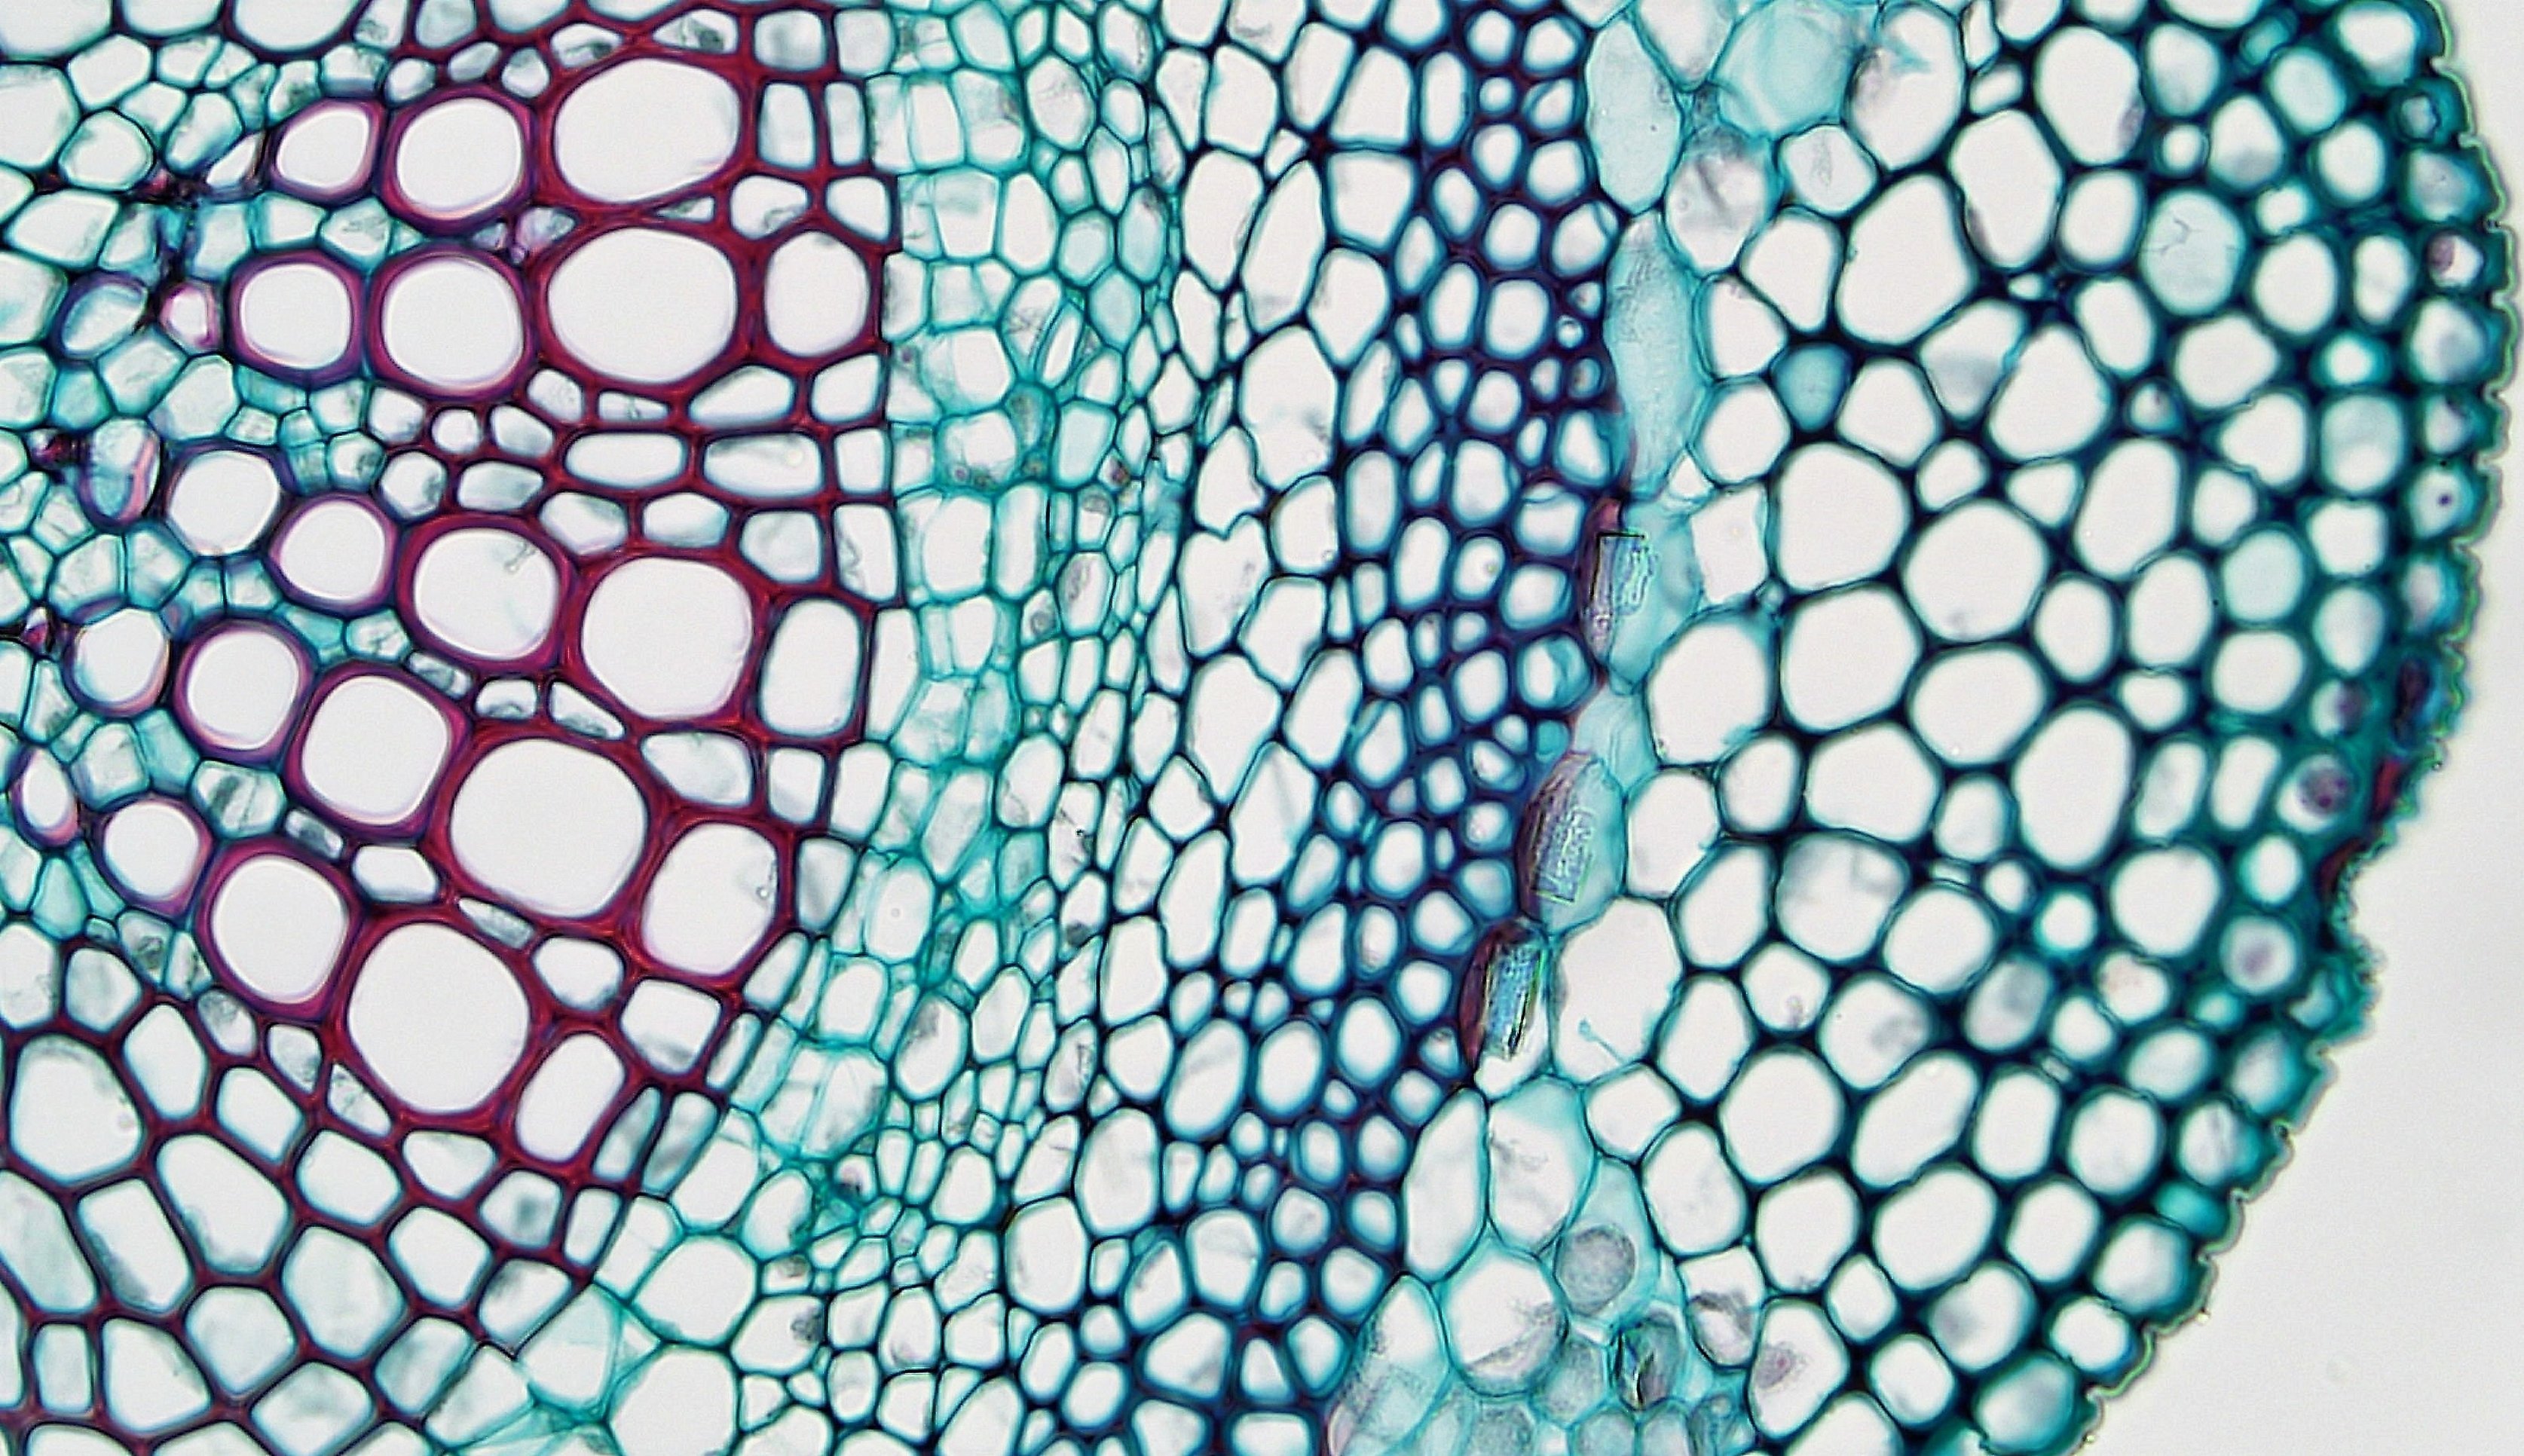 Механическая ткань растений под микроскопом